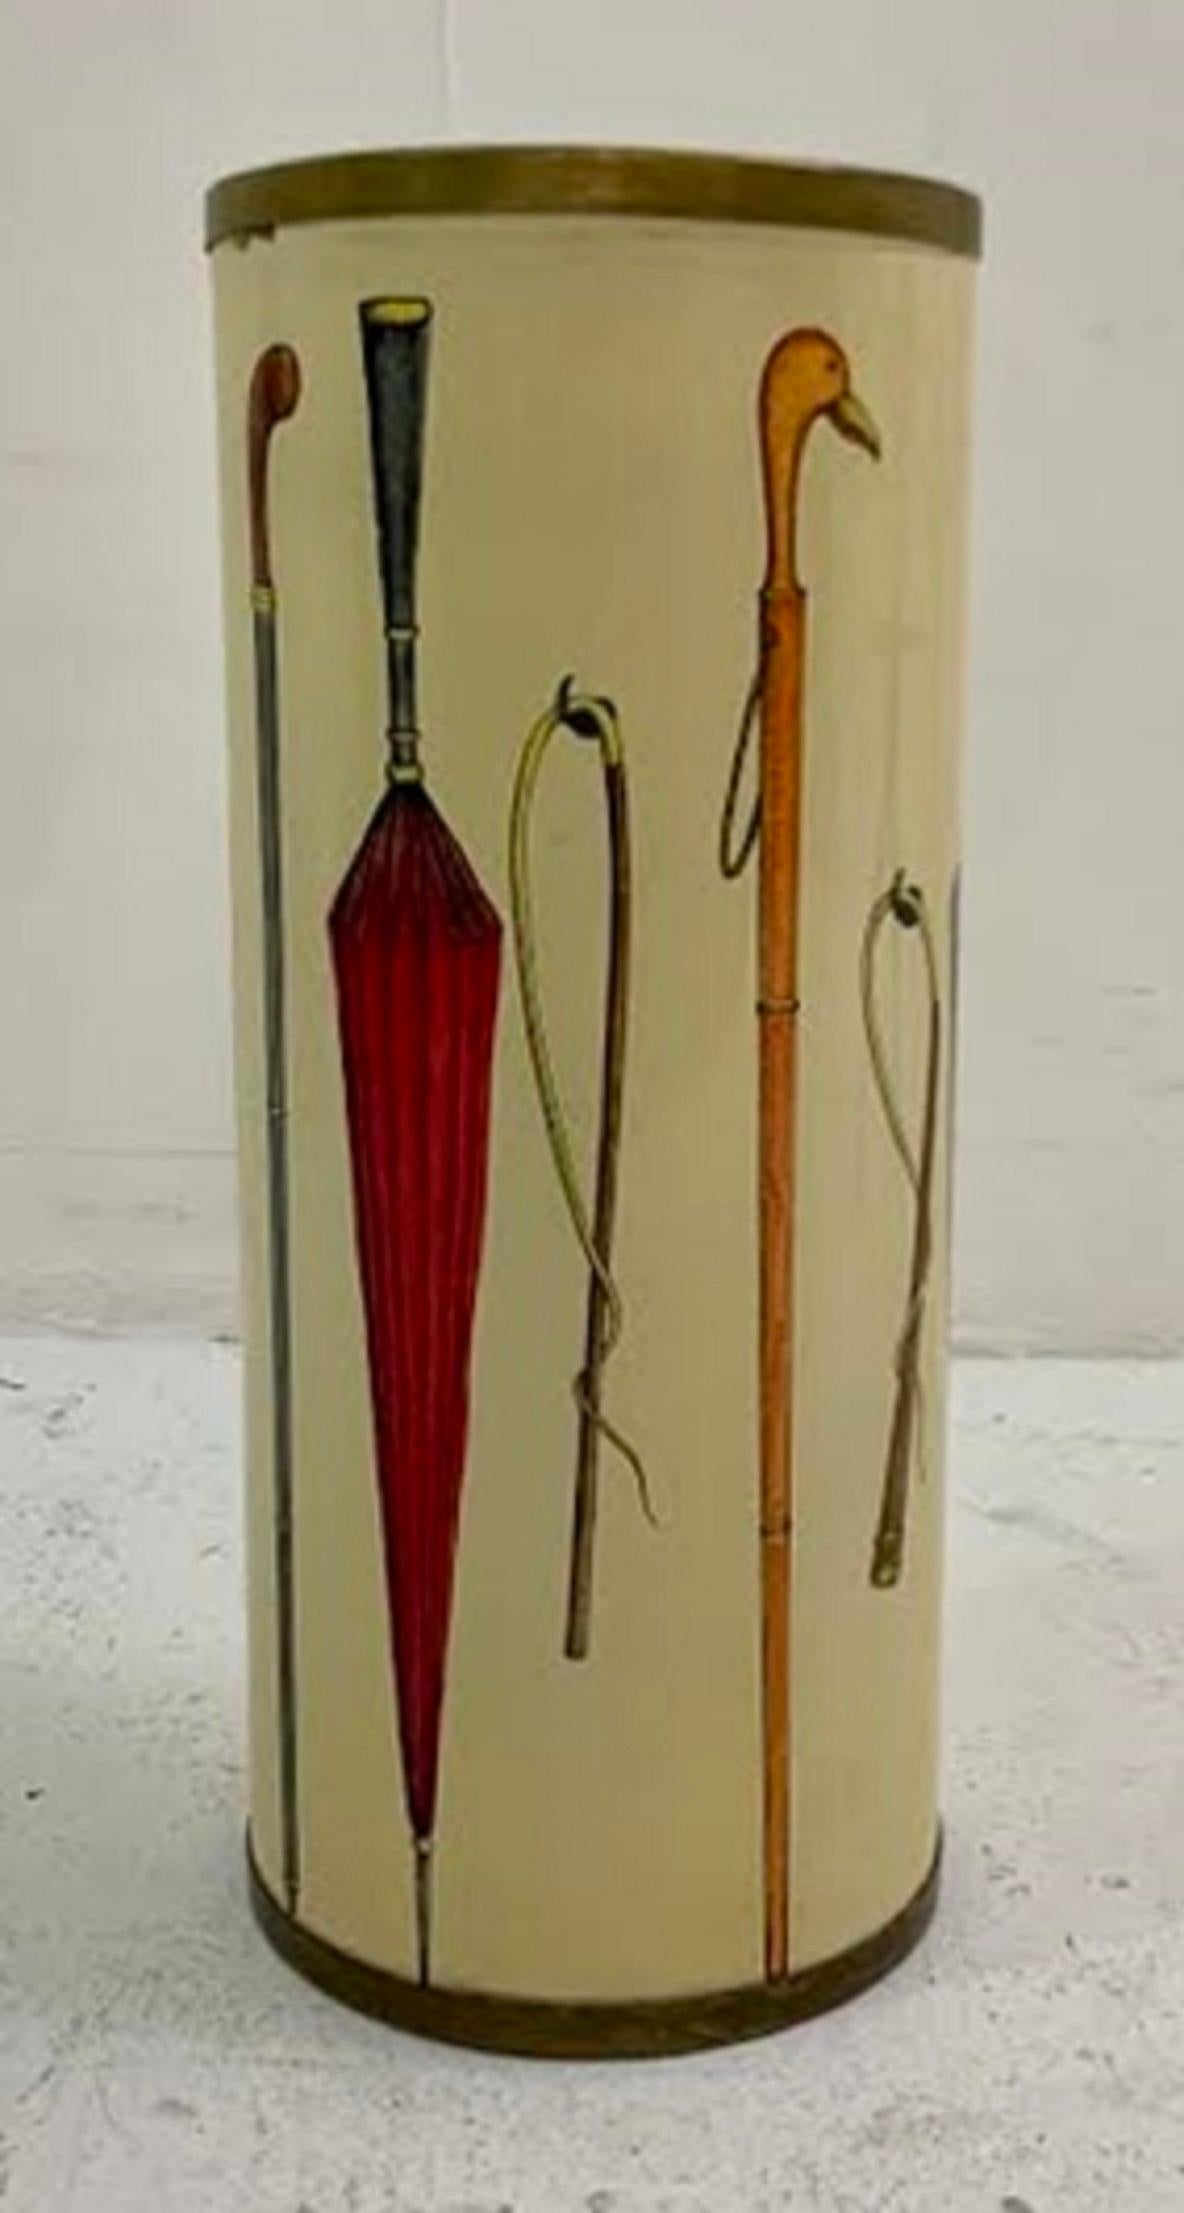 Umbrella holder by Atelier Fornasetti.